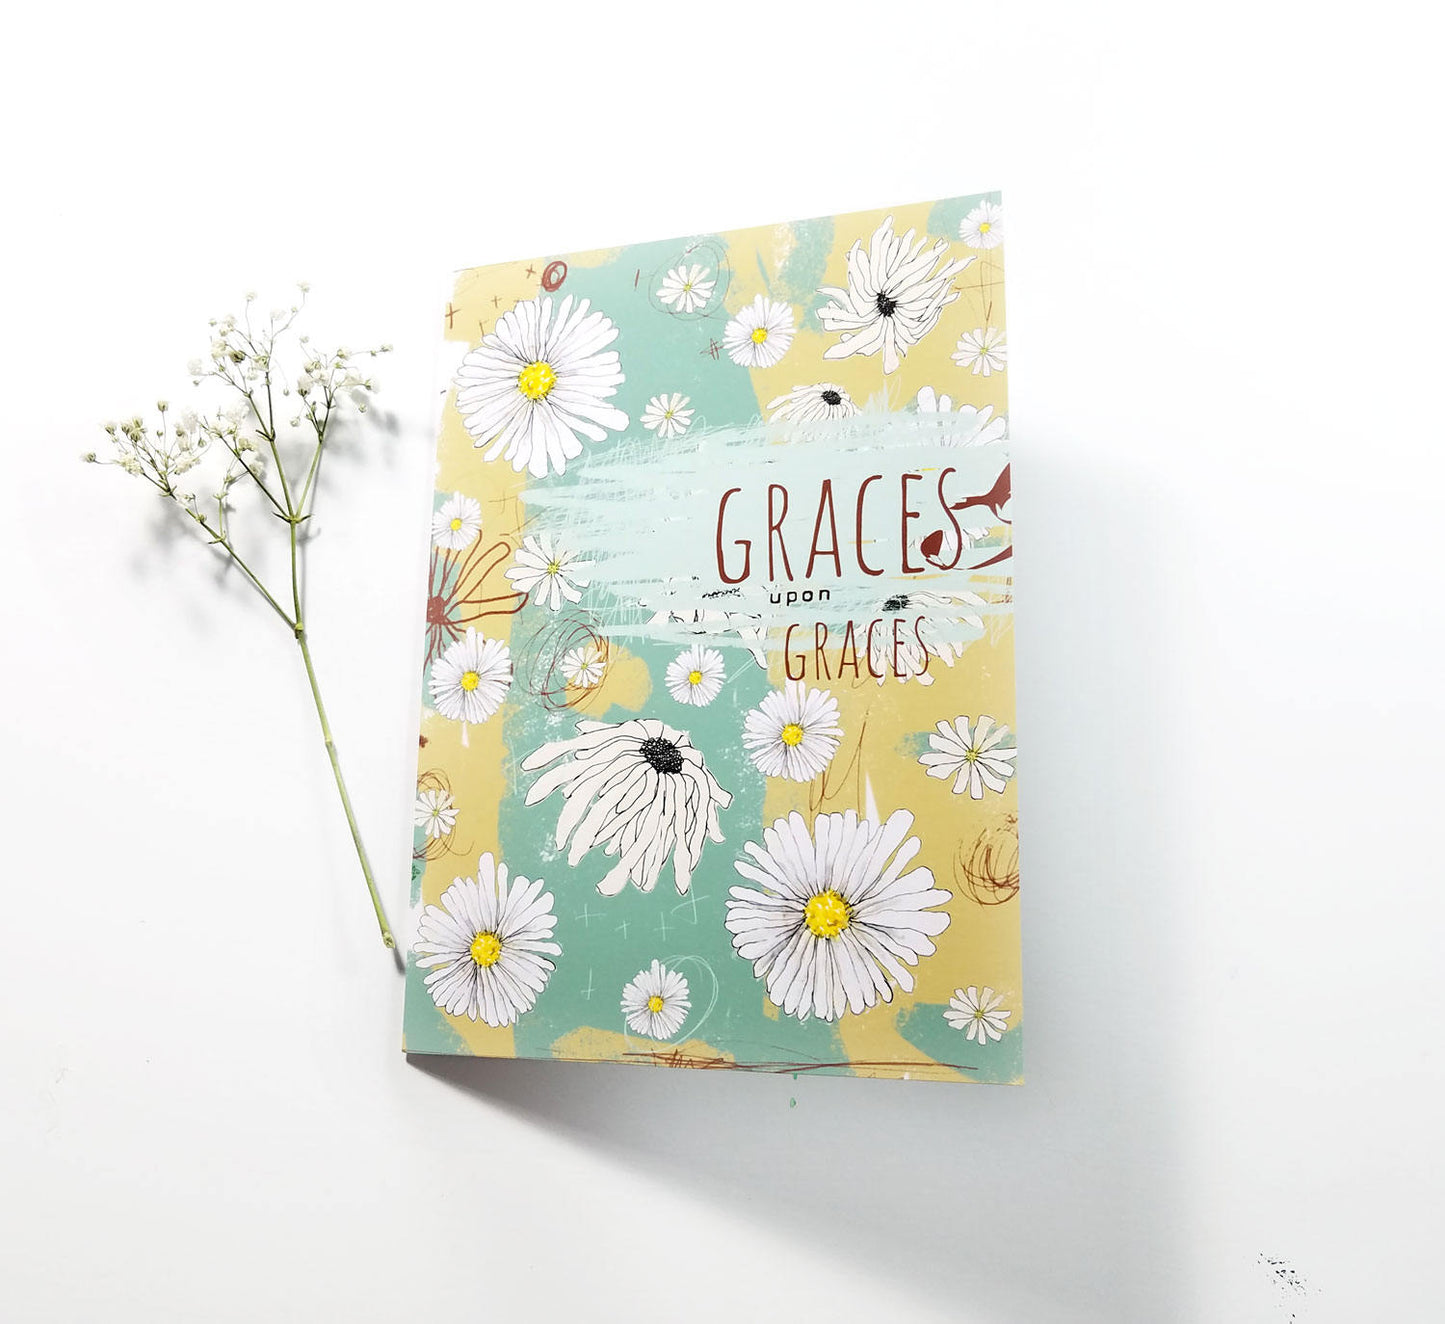 Graces upon Graces Note Card 5x7